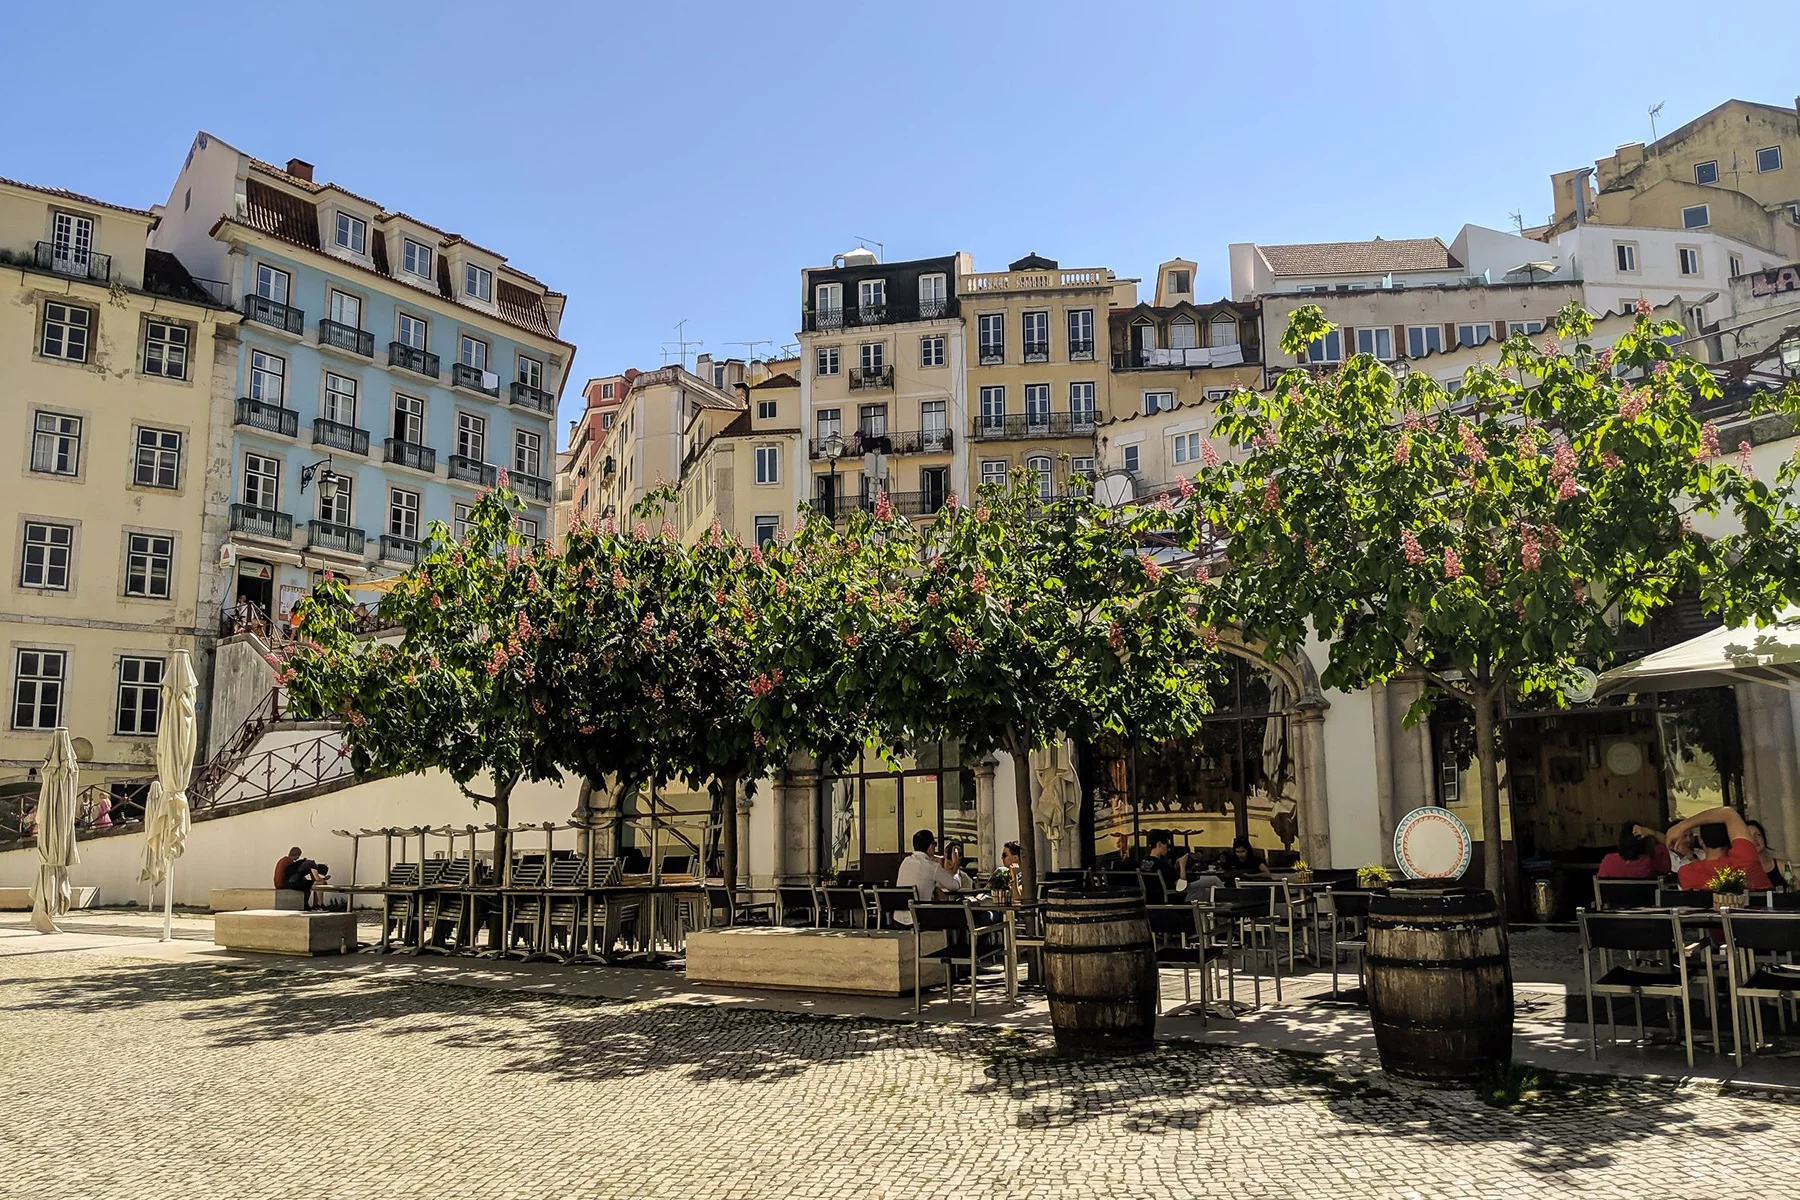 Outdoor café on a cobblestone square in Lisbon